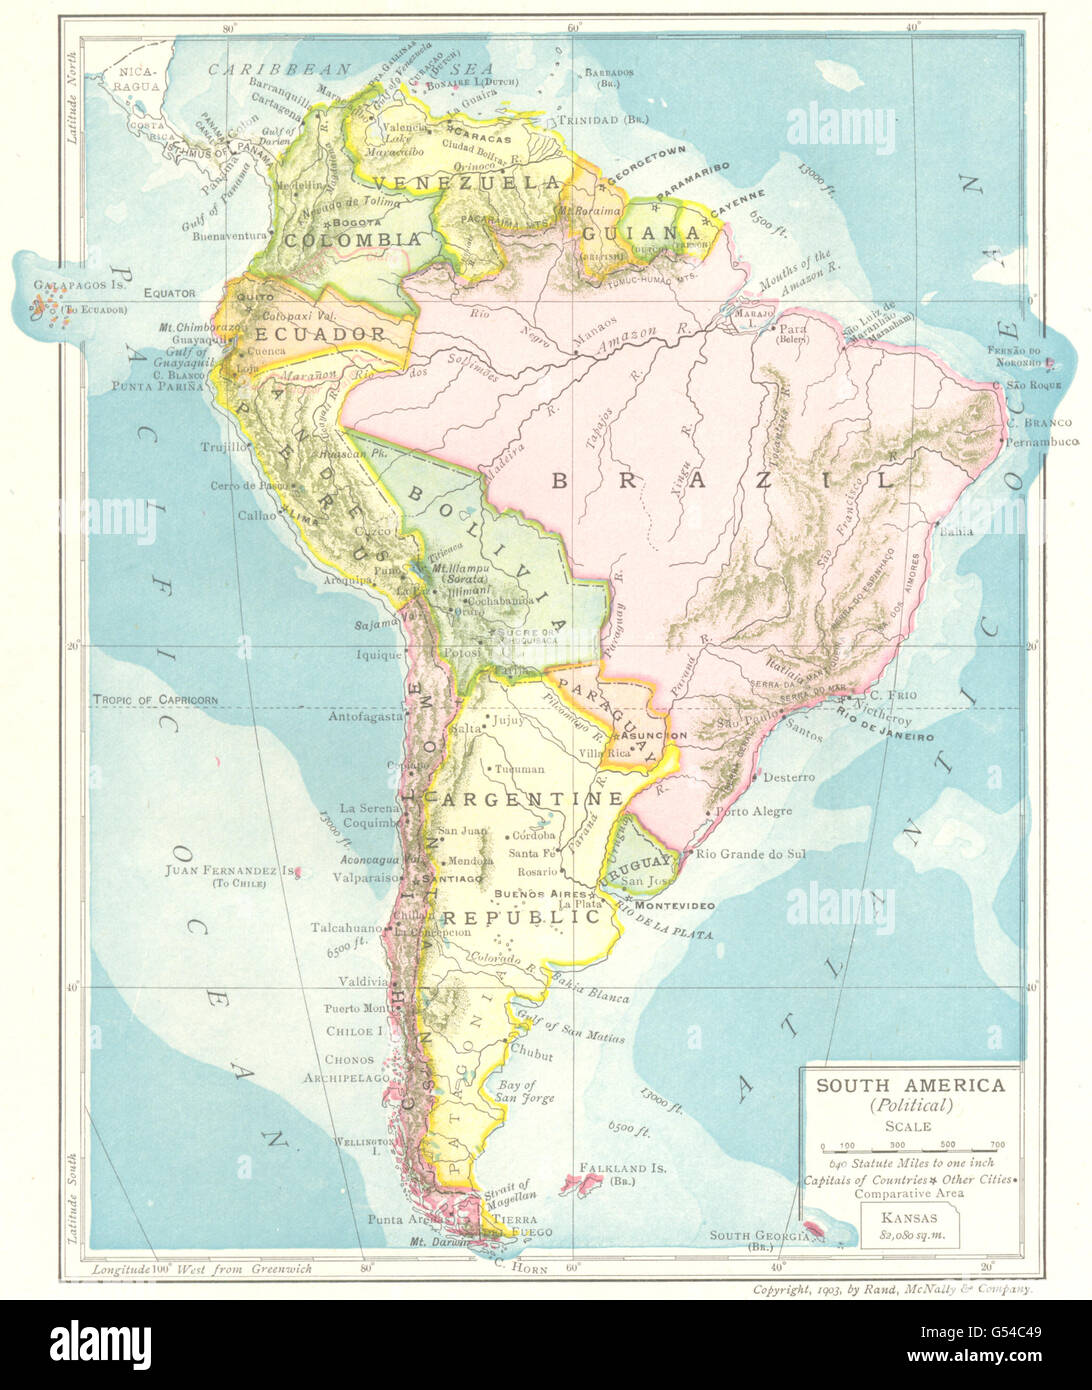 L'Amérique du Sud (Politique). République Argentine Bolivie Brésil Guyane, 1907 map Banque D'Images